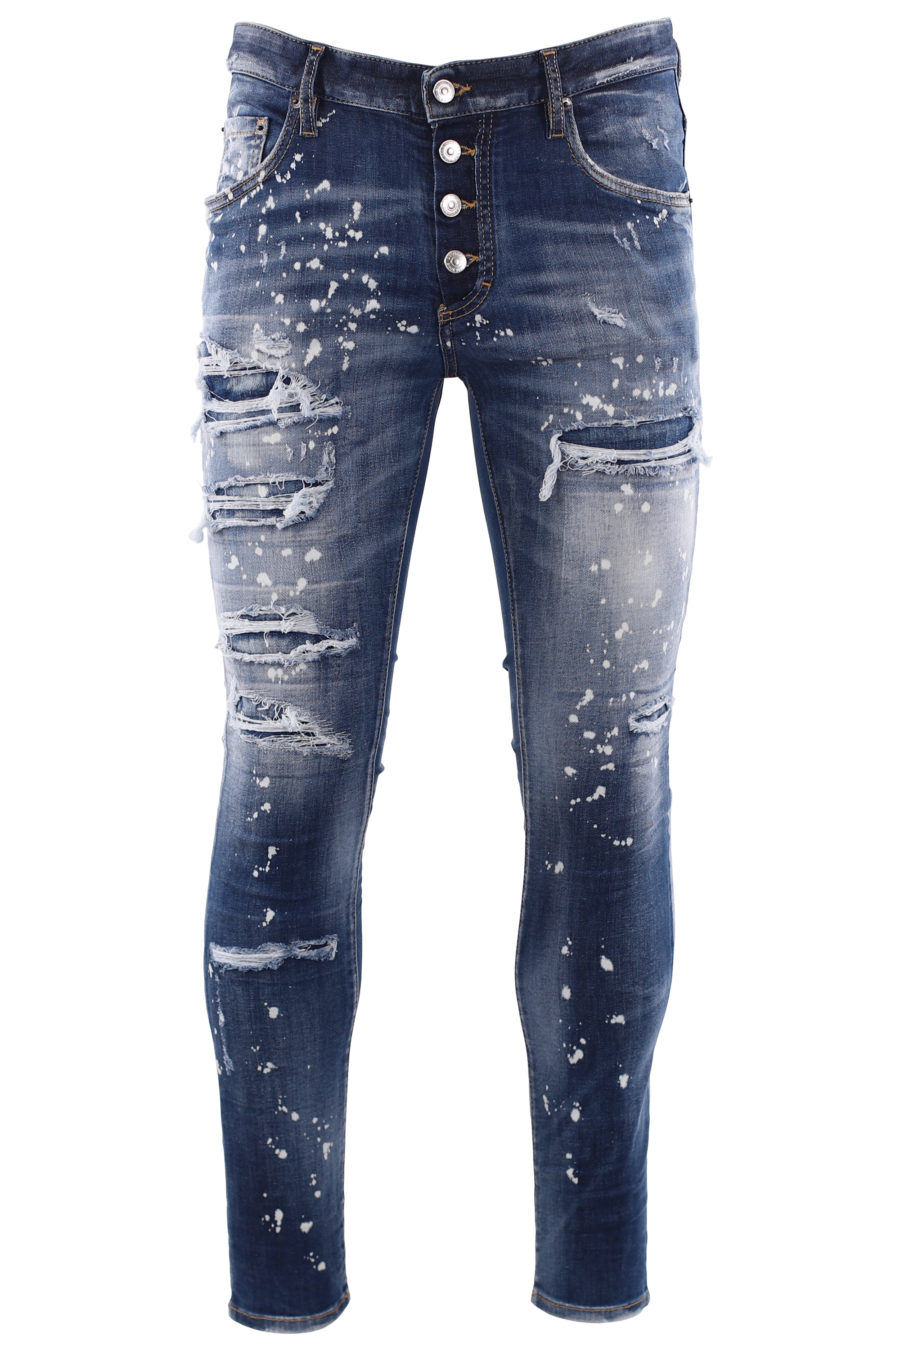 Jeans "super twinky jean" blau getragen und weiße Farbe - IMG 6682